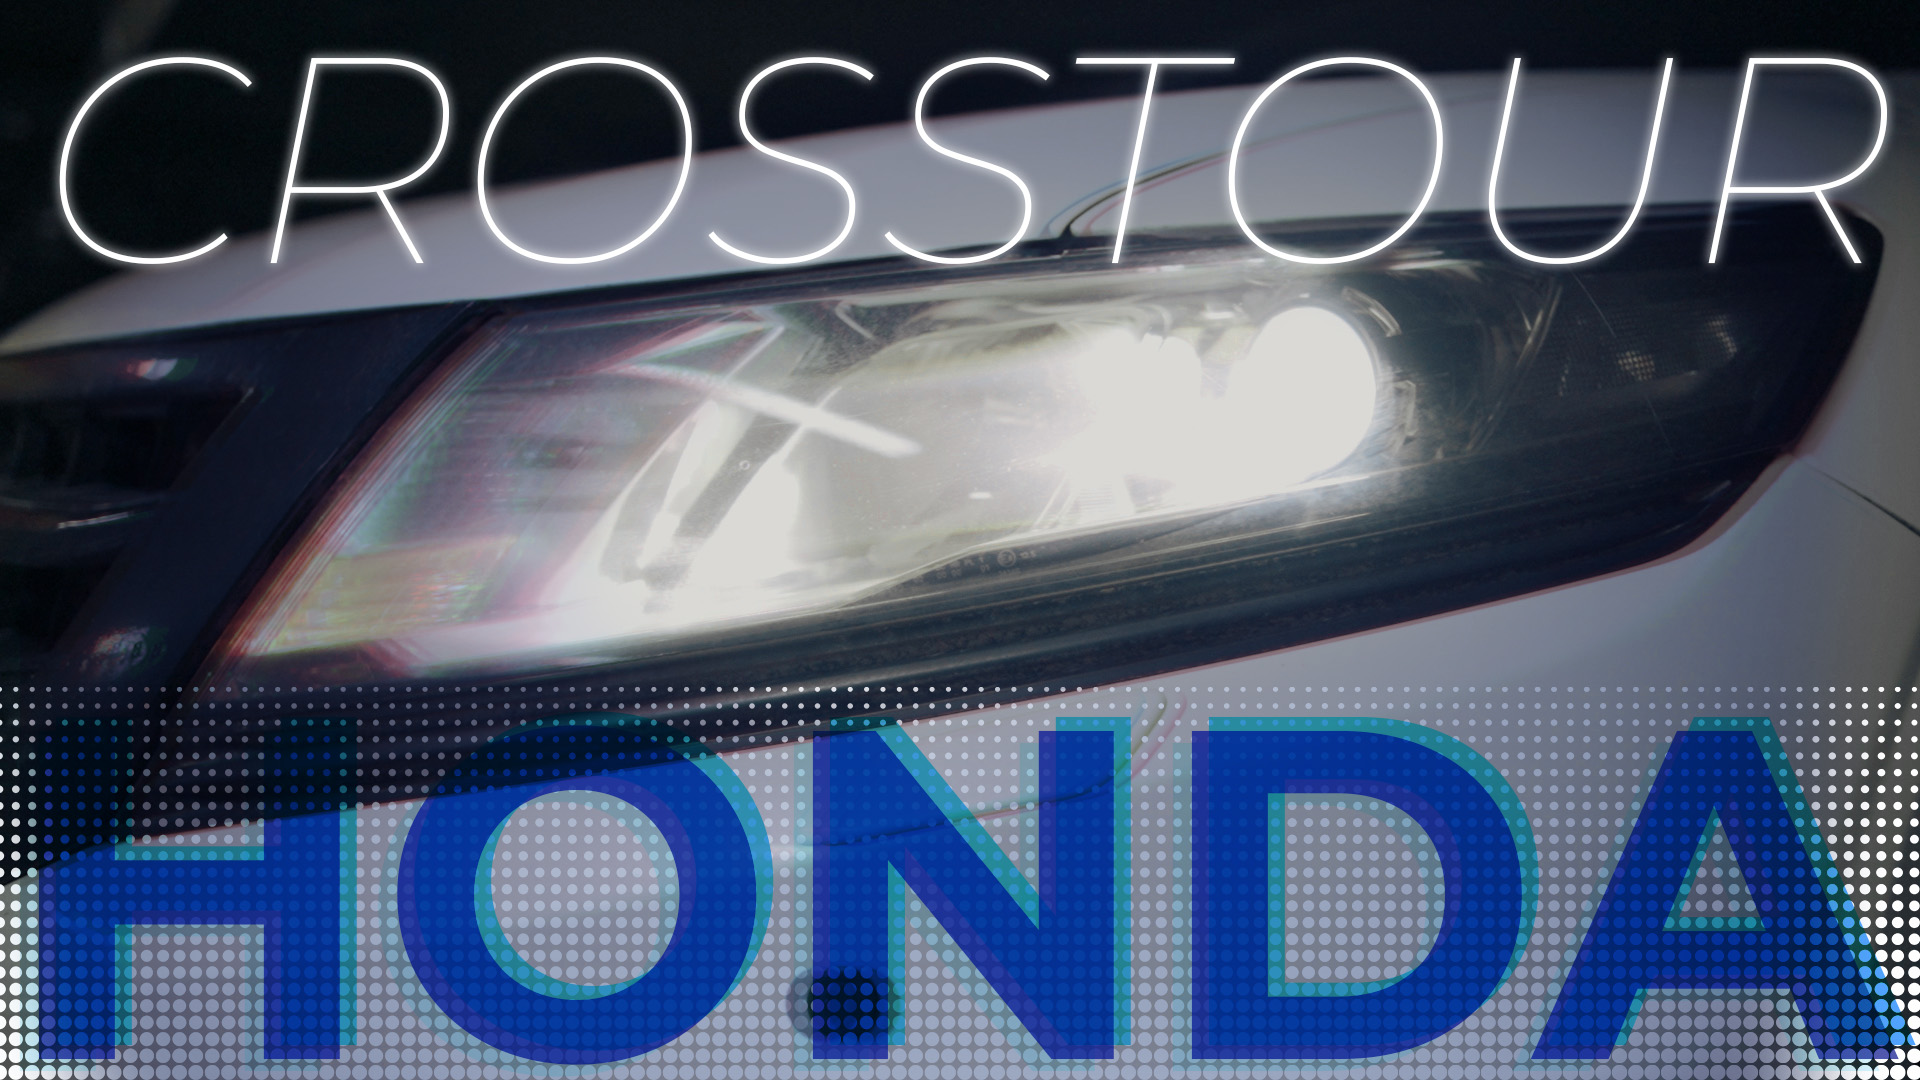 Замена штатных ксеноновых линз на би-светодиодные на Honda Crosstour